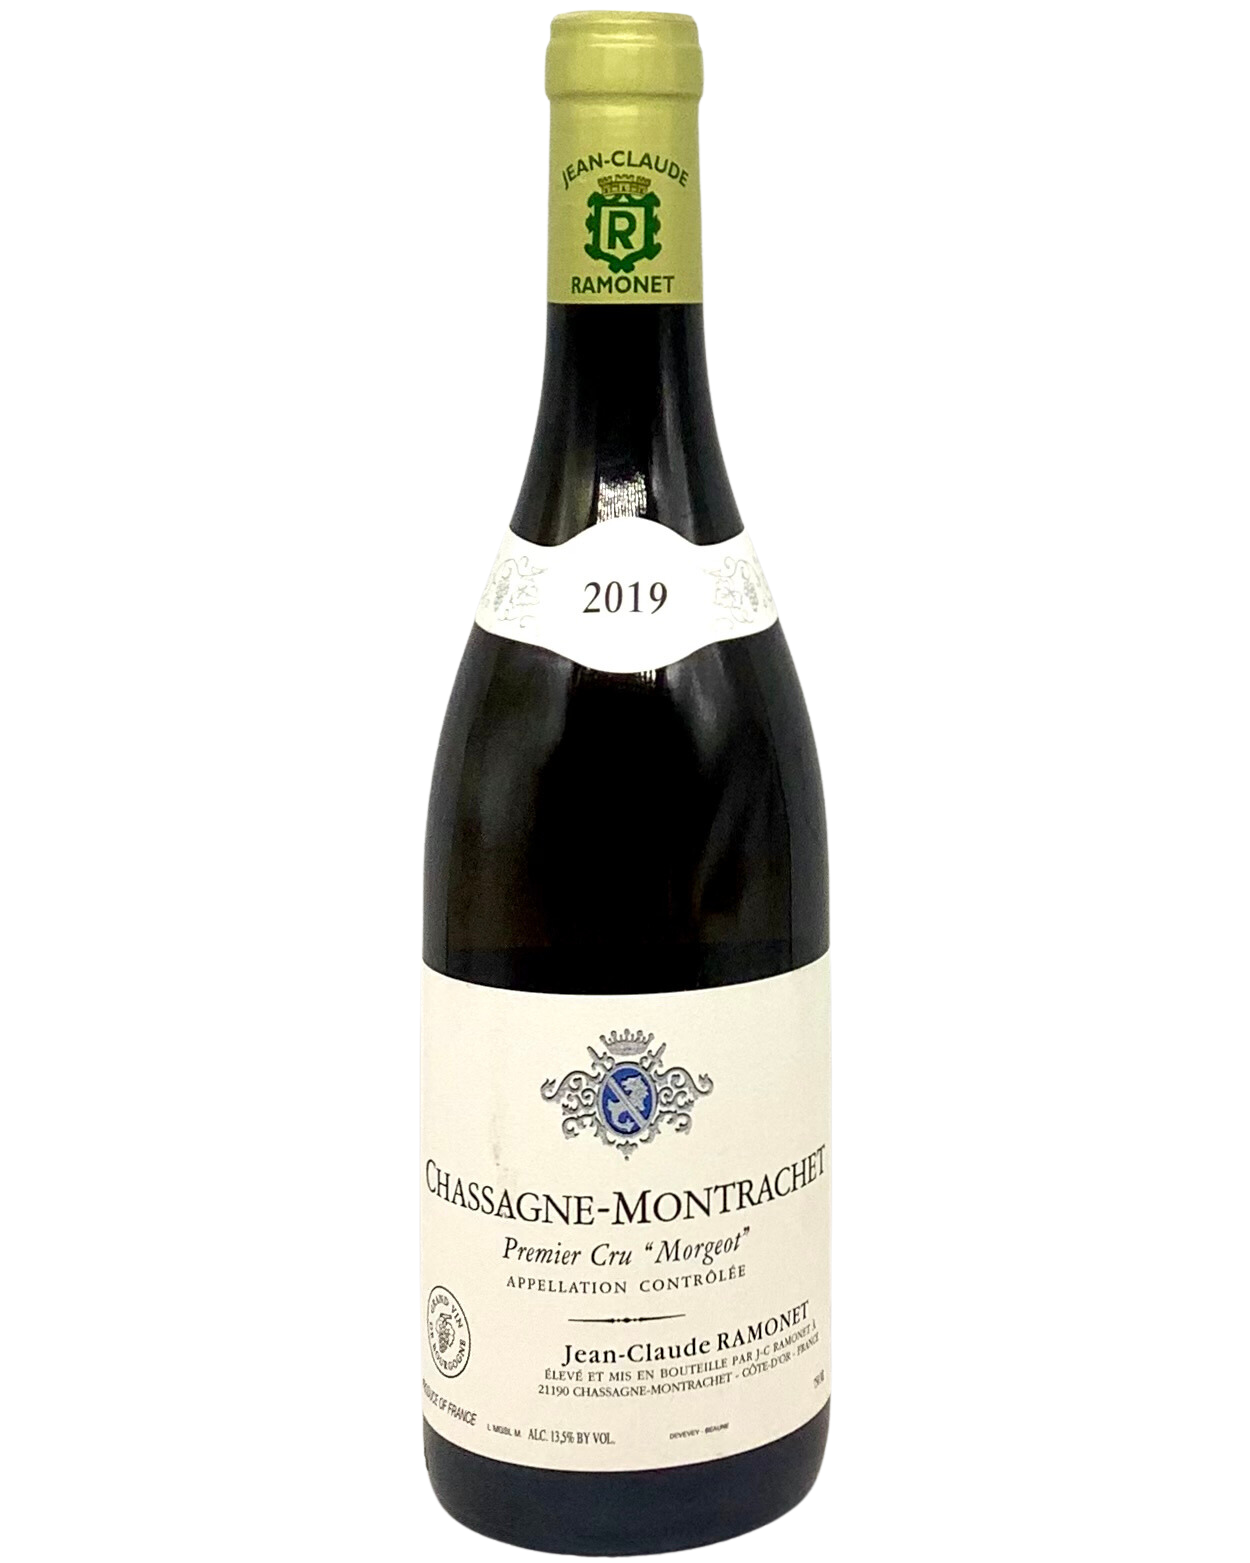 Jean-Claude Ramonet, Chardonnay, Chassagne-Montrachet Premier Cru "Morgeot" Côte de Beaune, Burgundy, France 2019